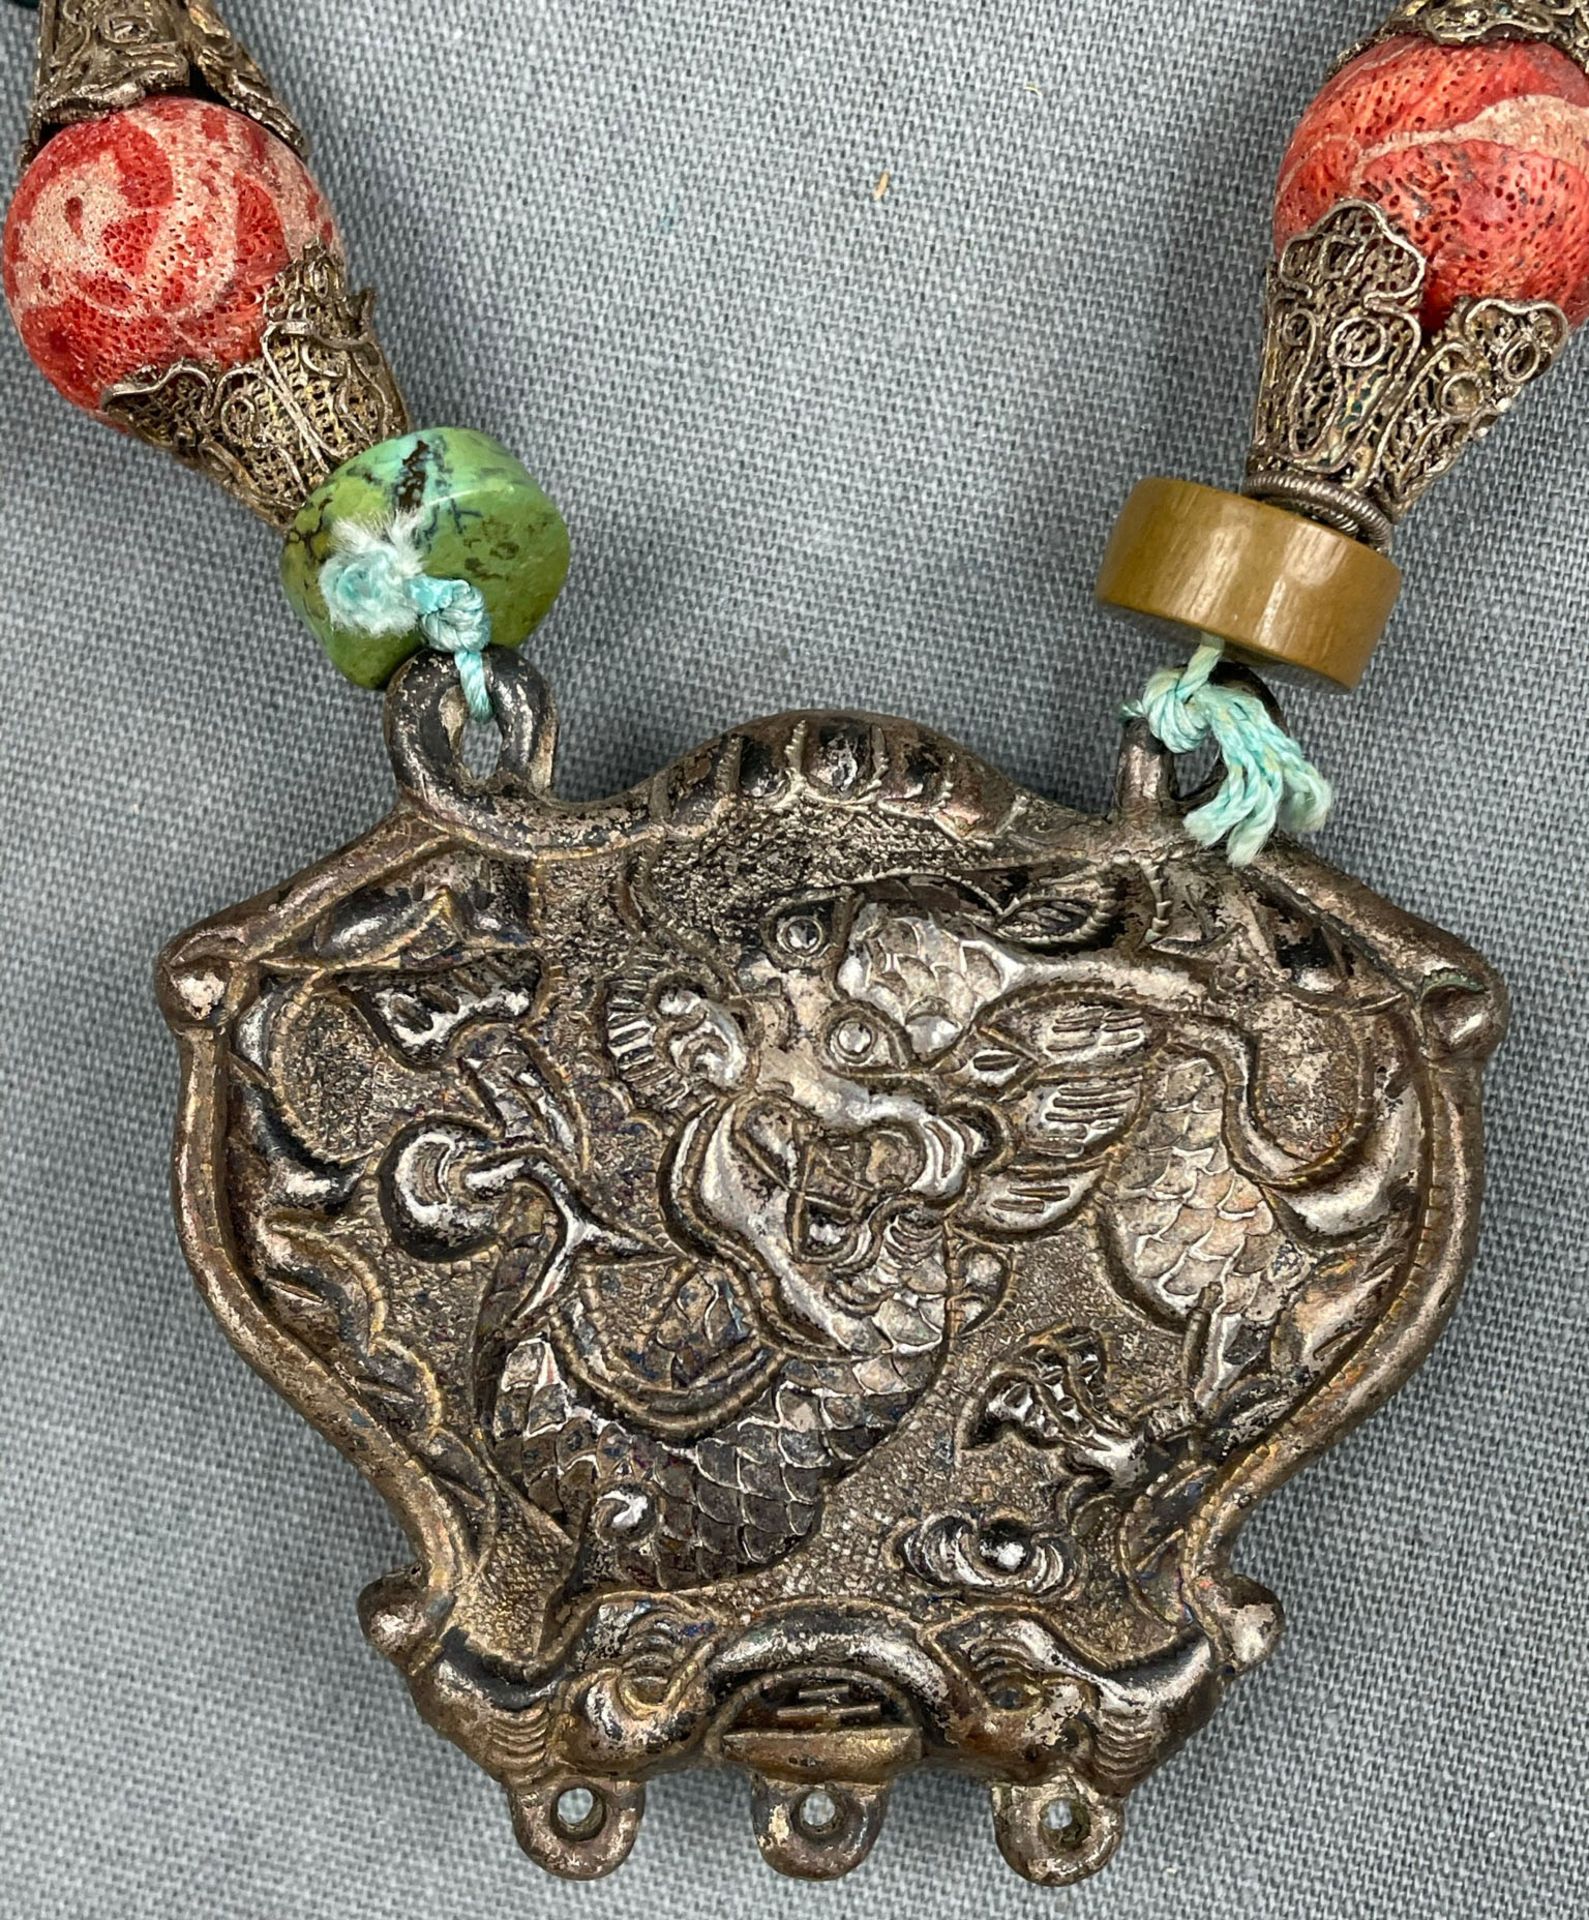 Collier Kette mit Drachen - Anhänger. Wohl Tibet, China antik. - Bild 4 aus 9